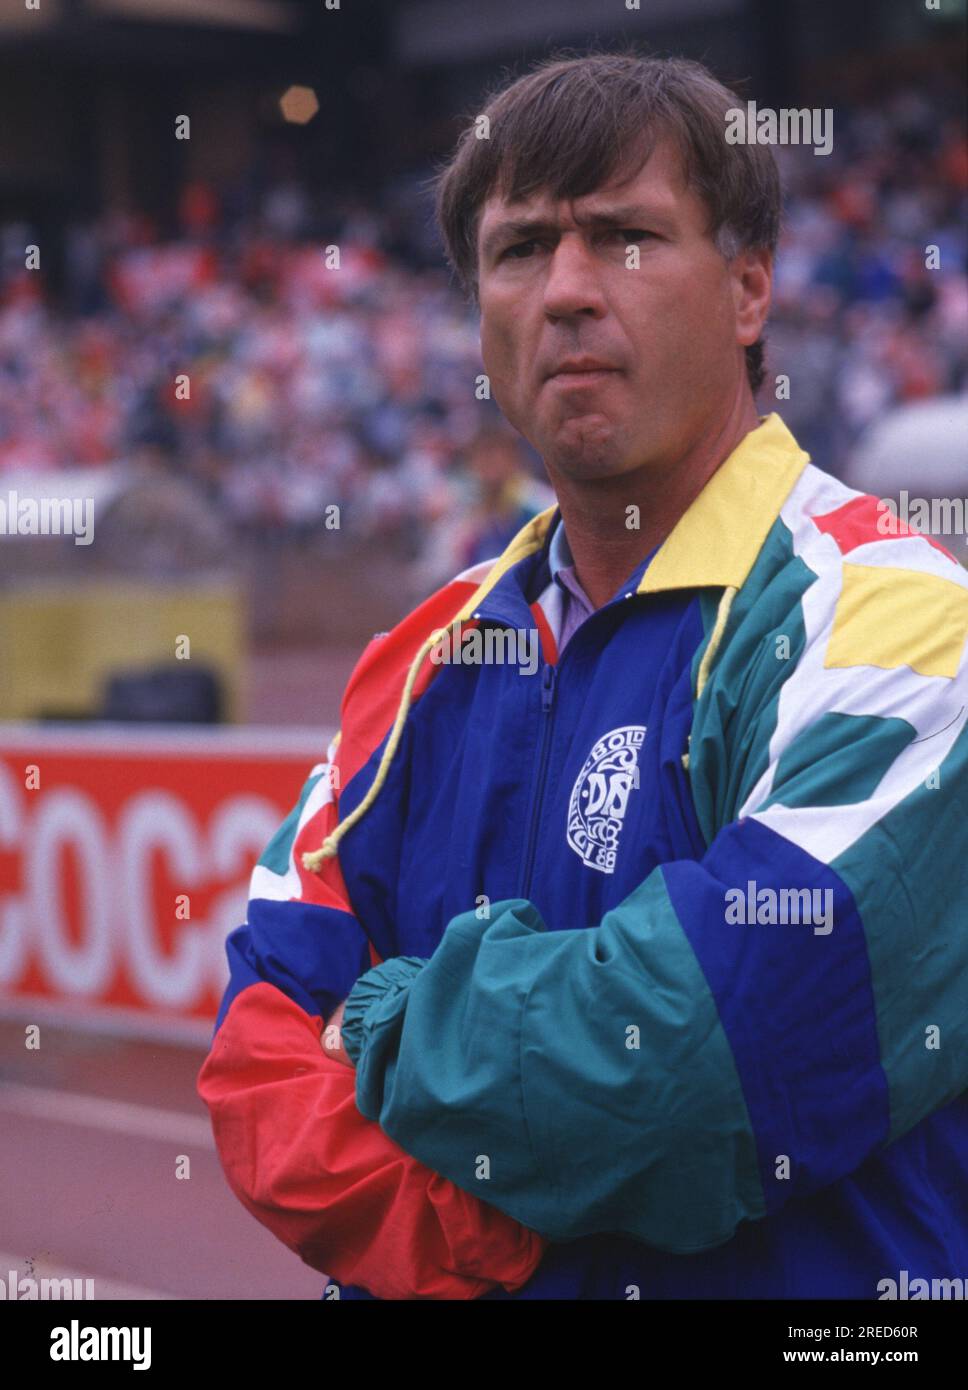 Championnat d'Europe de football 1988 Danemark - Espagne 2:3 Coach Sepp Piontek (DEN) [traduction automatique] Banque D'Images